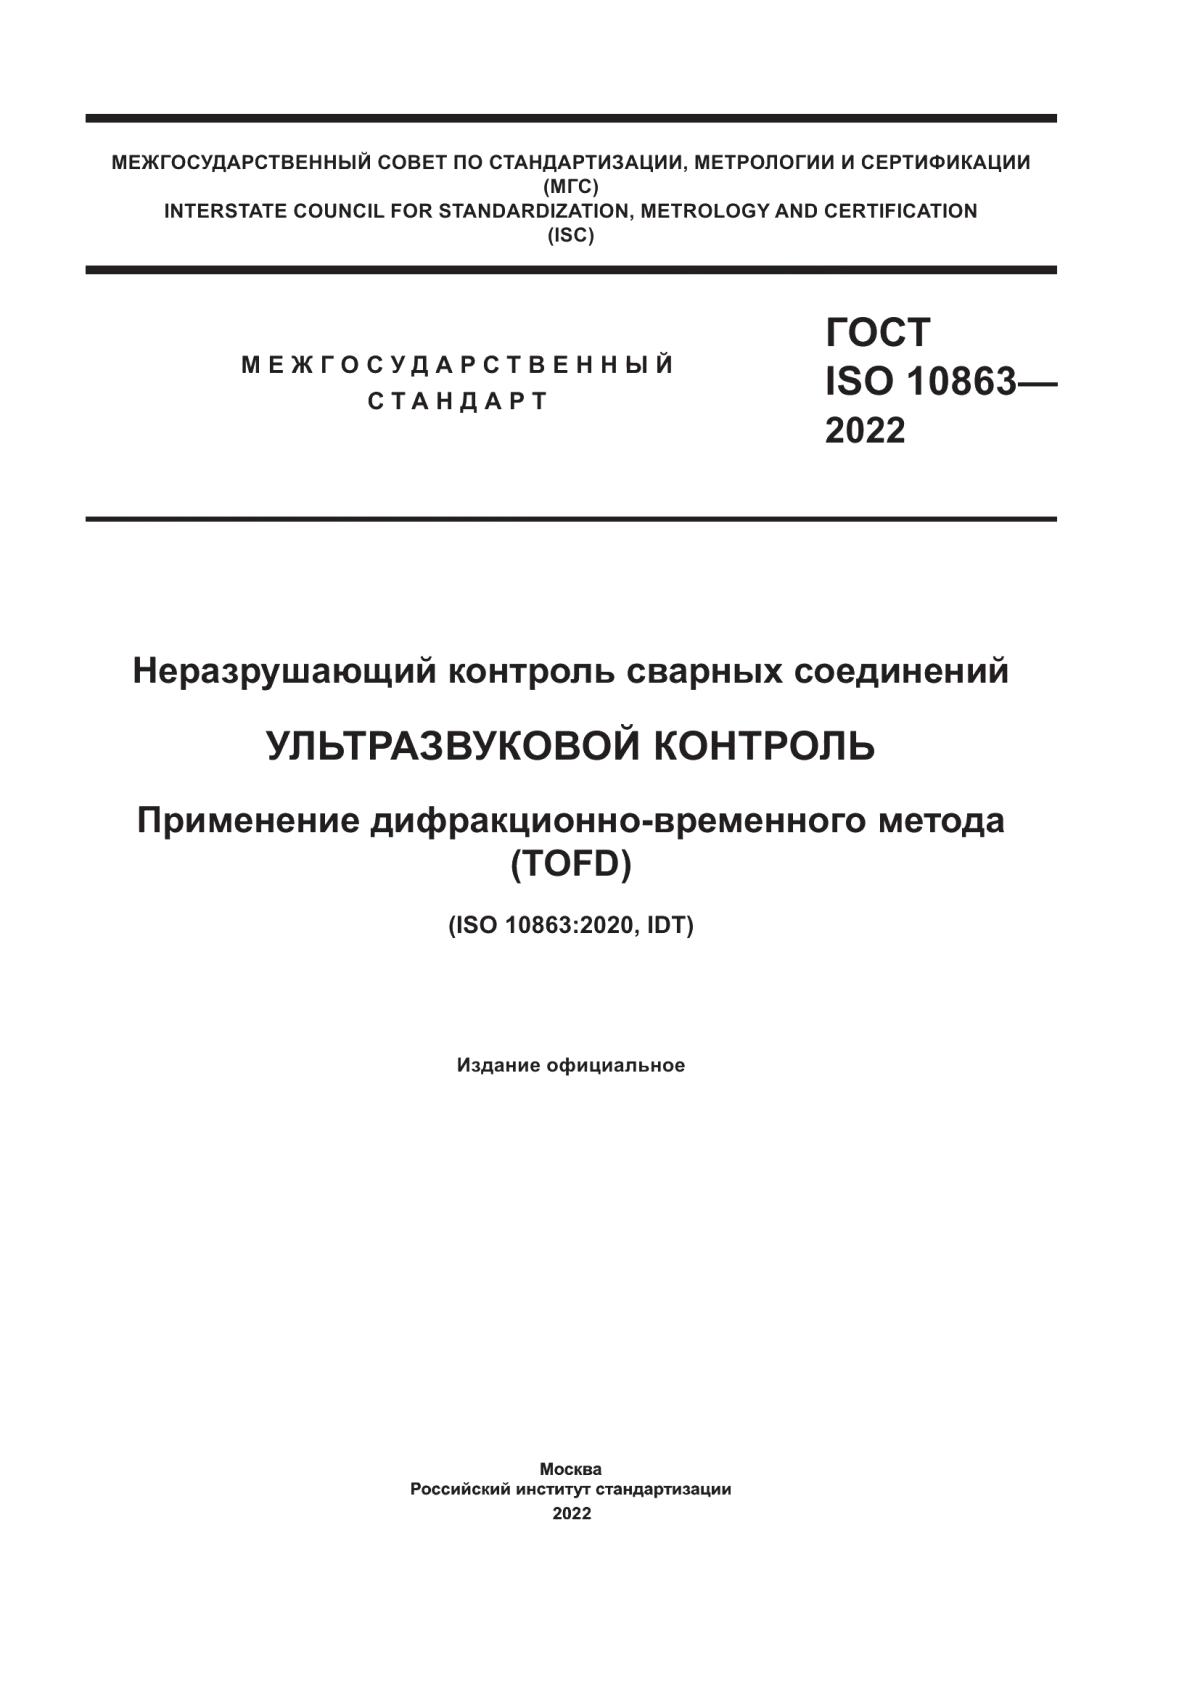 ГОСТ ISO 10863-2022 Неразрушающий контроль сварных соединений. Ультразвуковой контроль. Применение дифракционно-временного метода (TOFD)